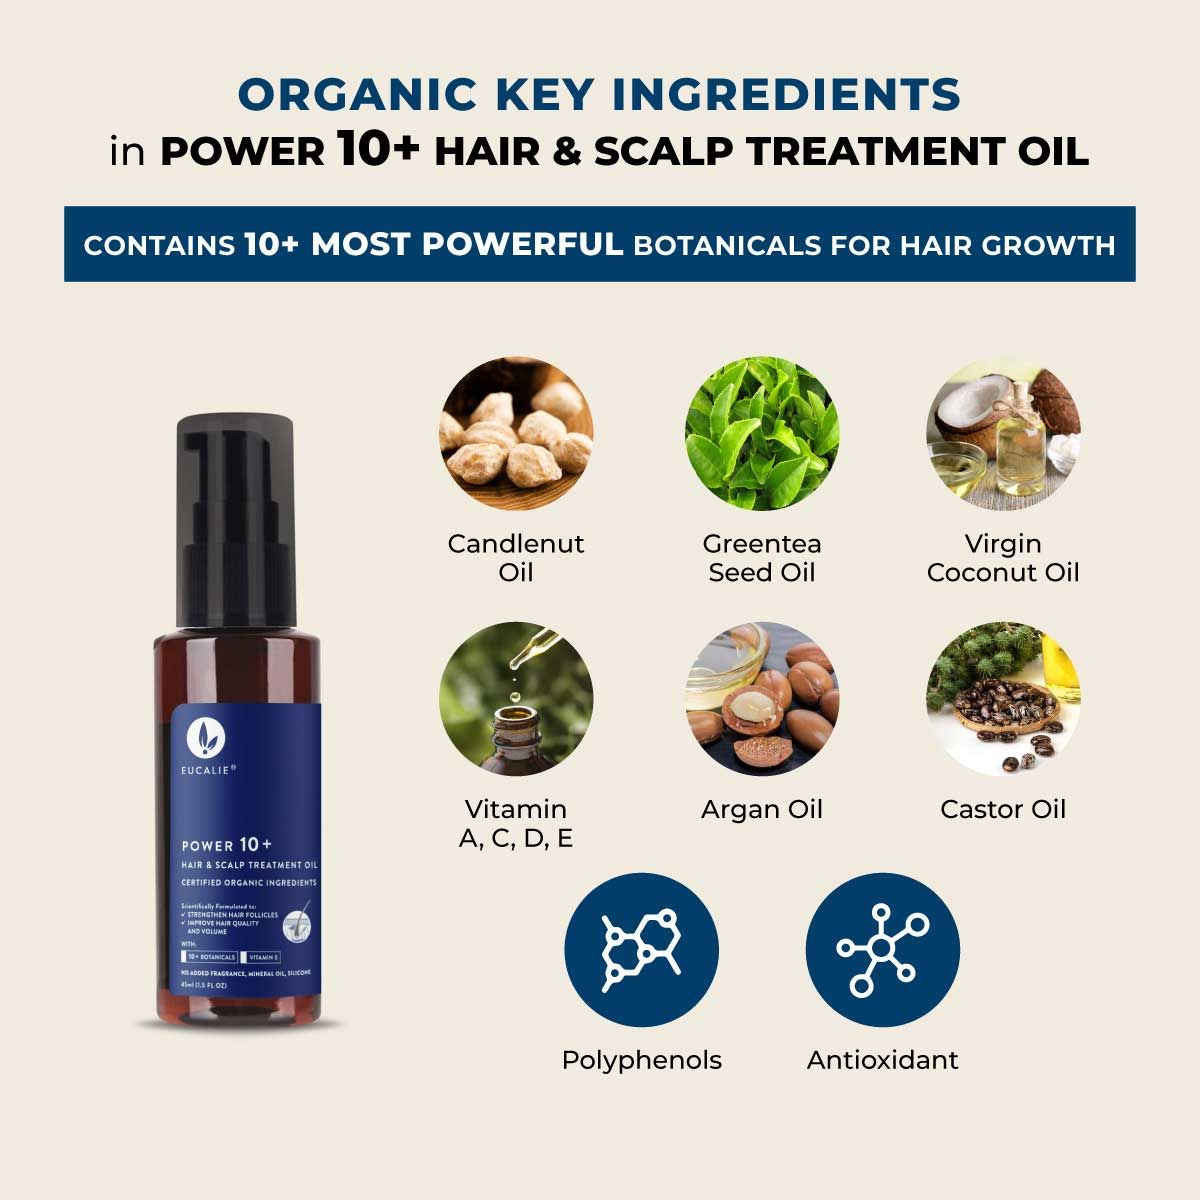 Eucalie Organic Hair & Scalp Treatment Oil - Power 10+ (50ml) - 6